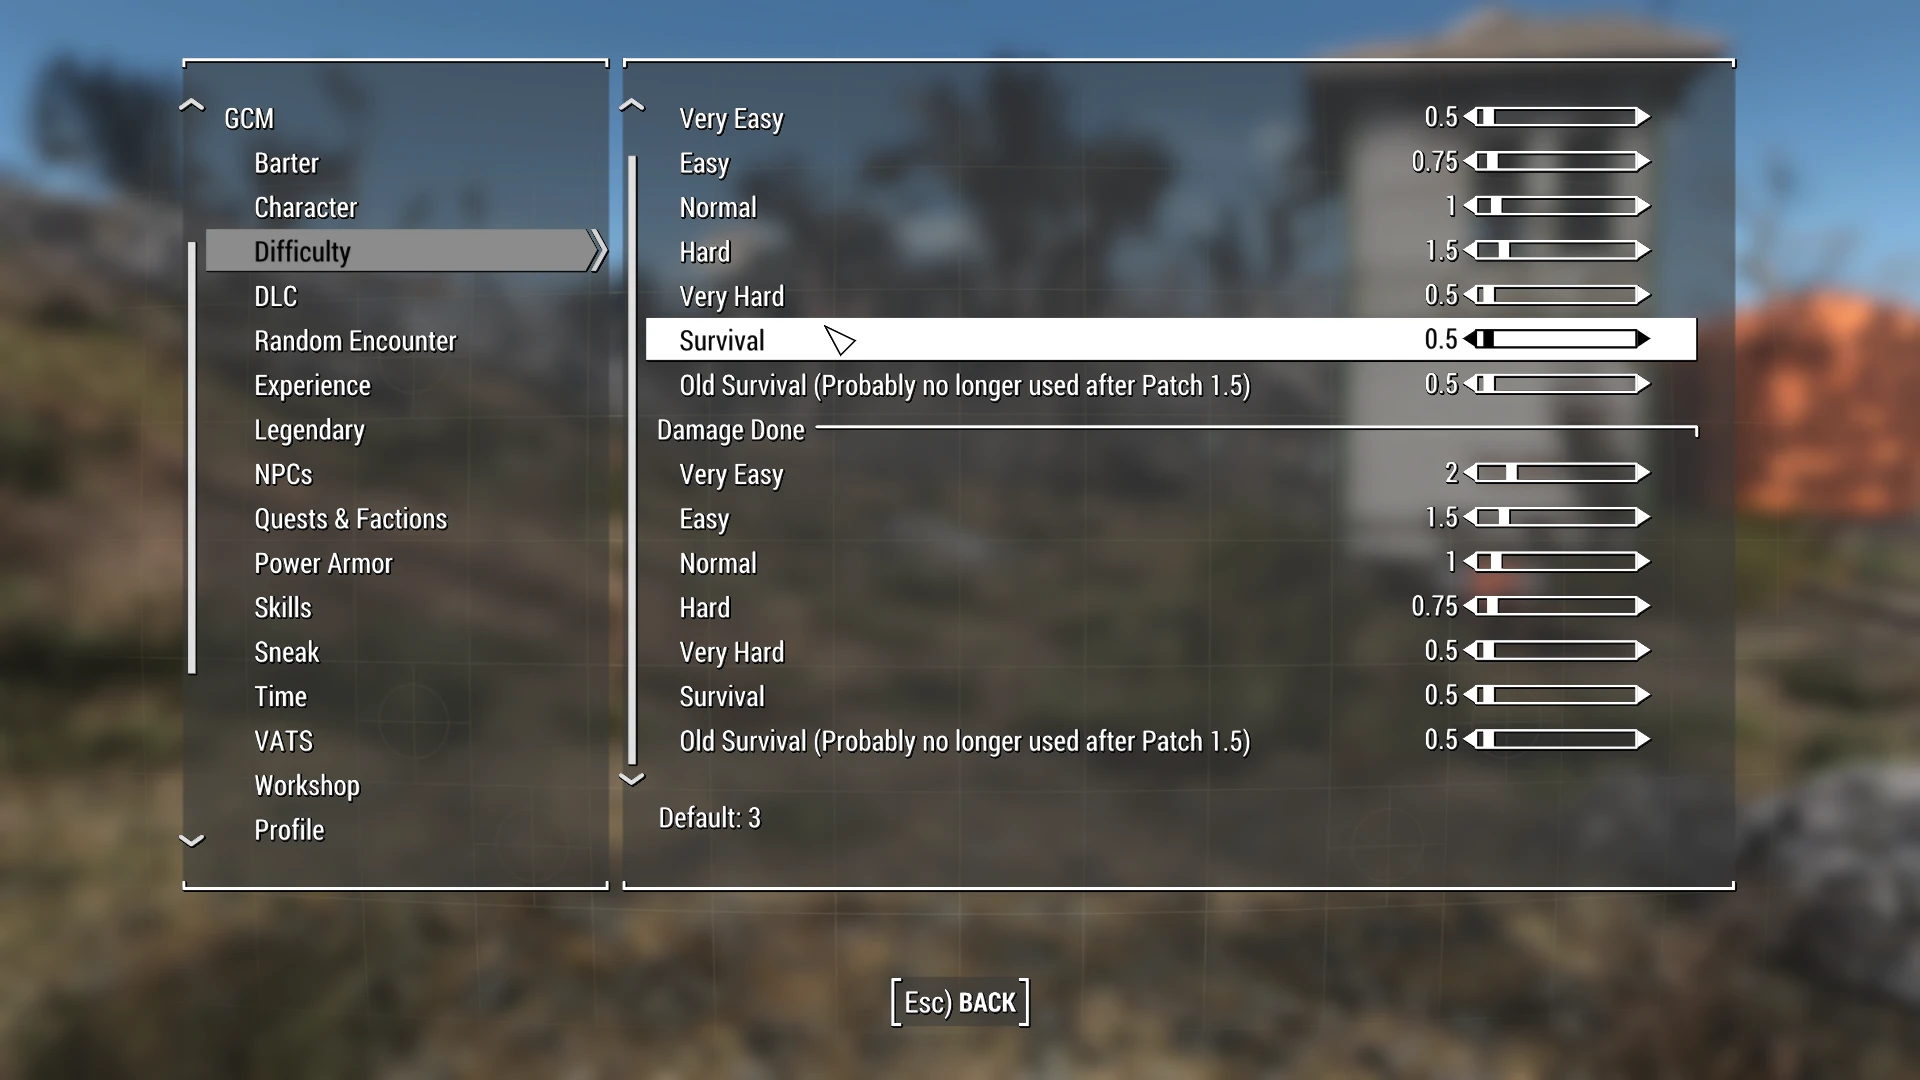 fallout 4 missing display menu in build mode